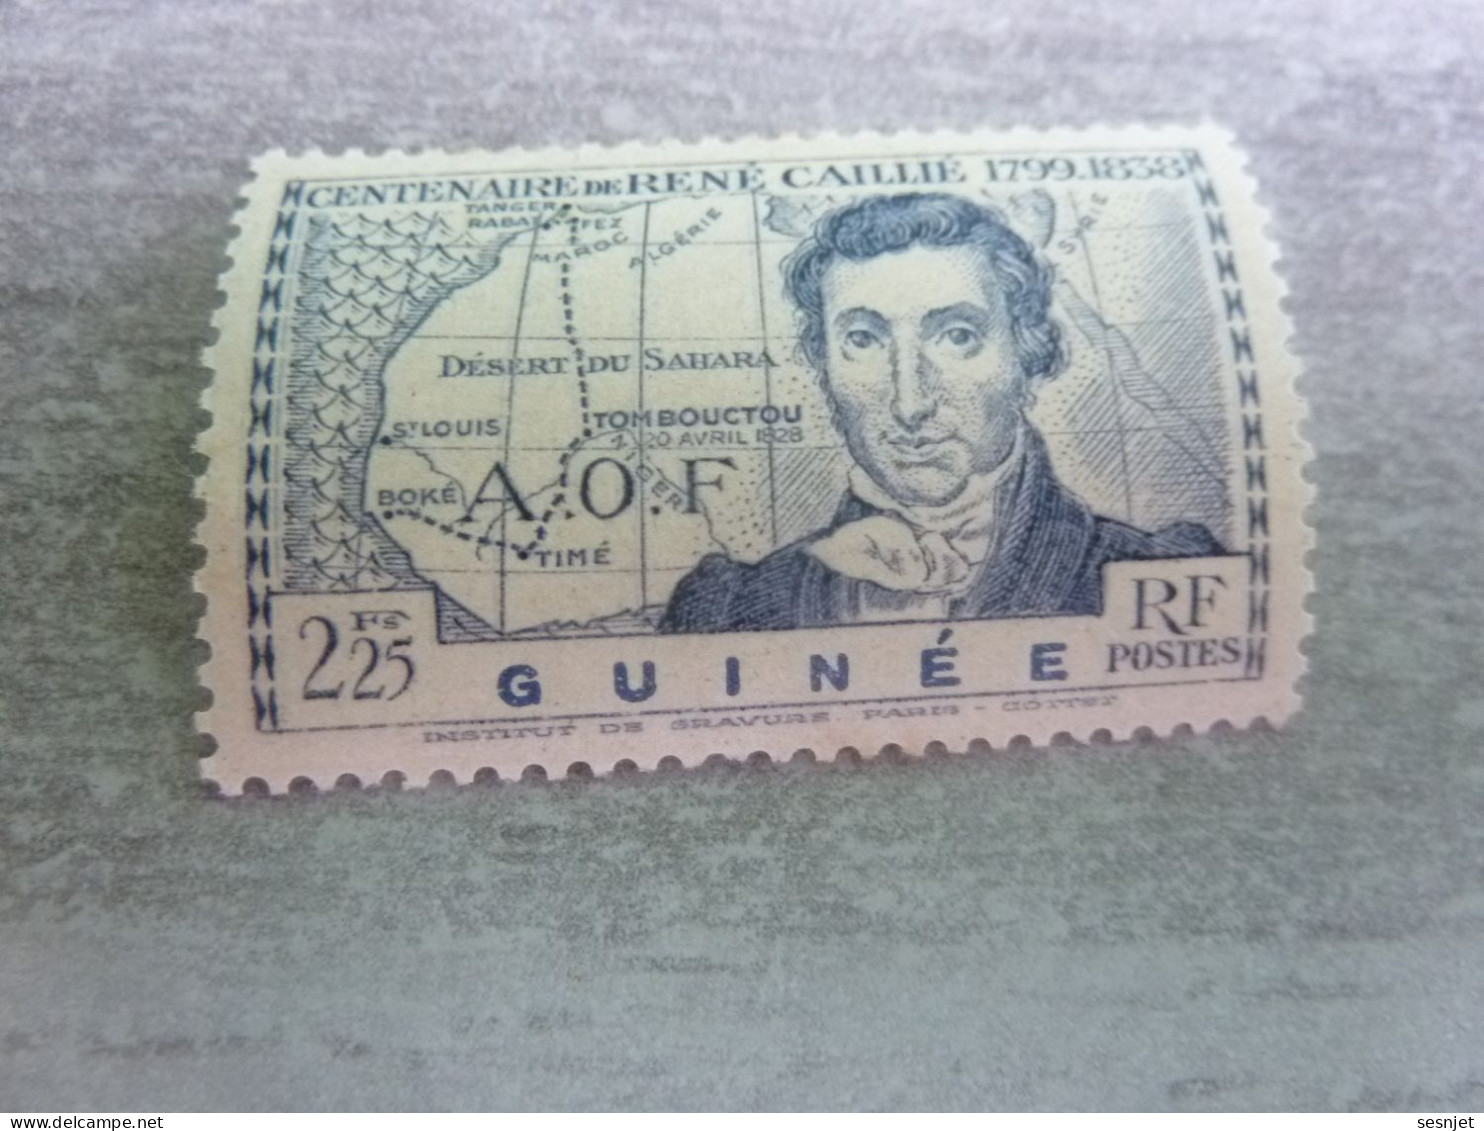 René Caillié (1709-1838) - A.o.f. - Guinée - 2f.25 - Yt 150 - Outremer - Neuf Sans Trace - Année 1939 - - Unused Stamps